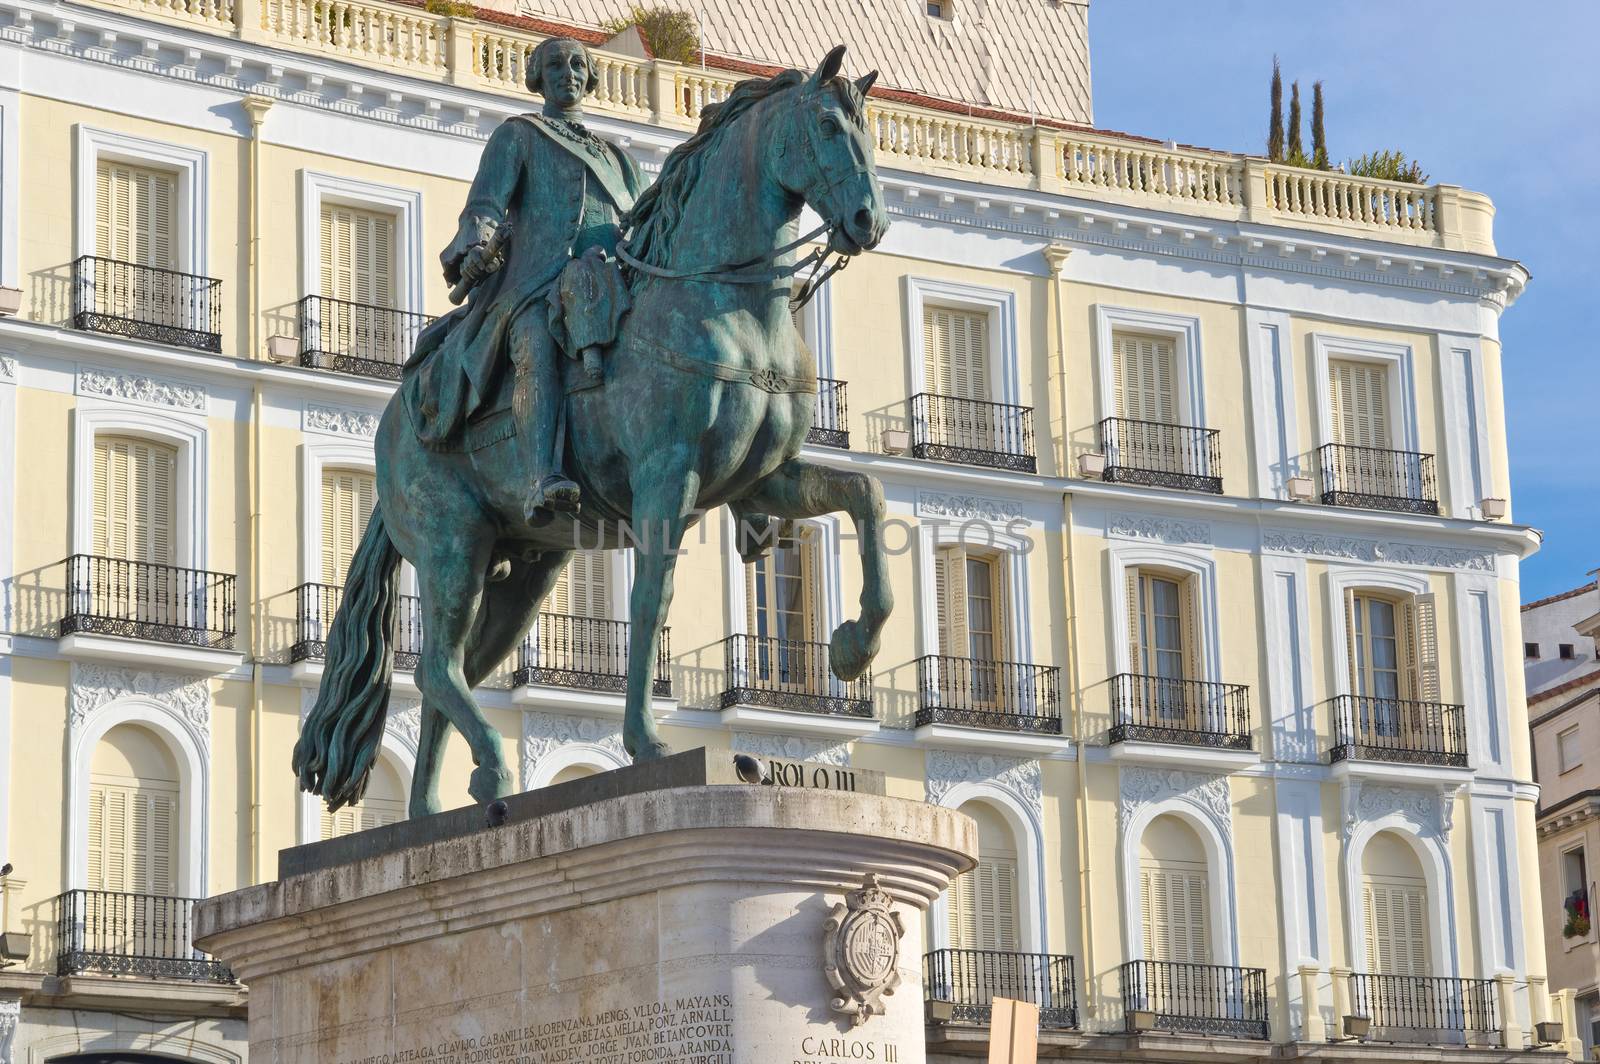 Statue of Carlos III on Puerta del Sol in Madrid, Spain